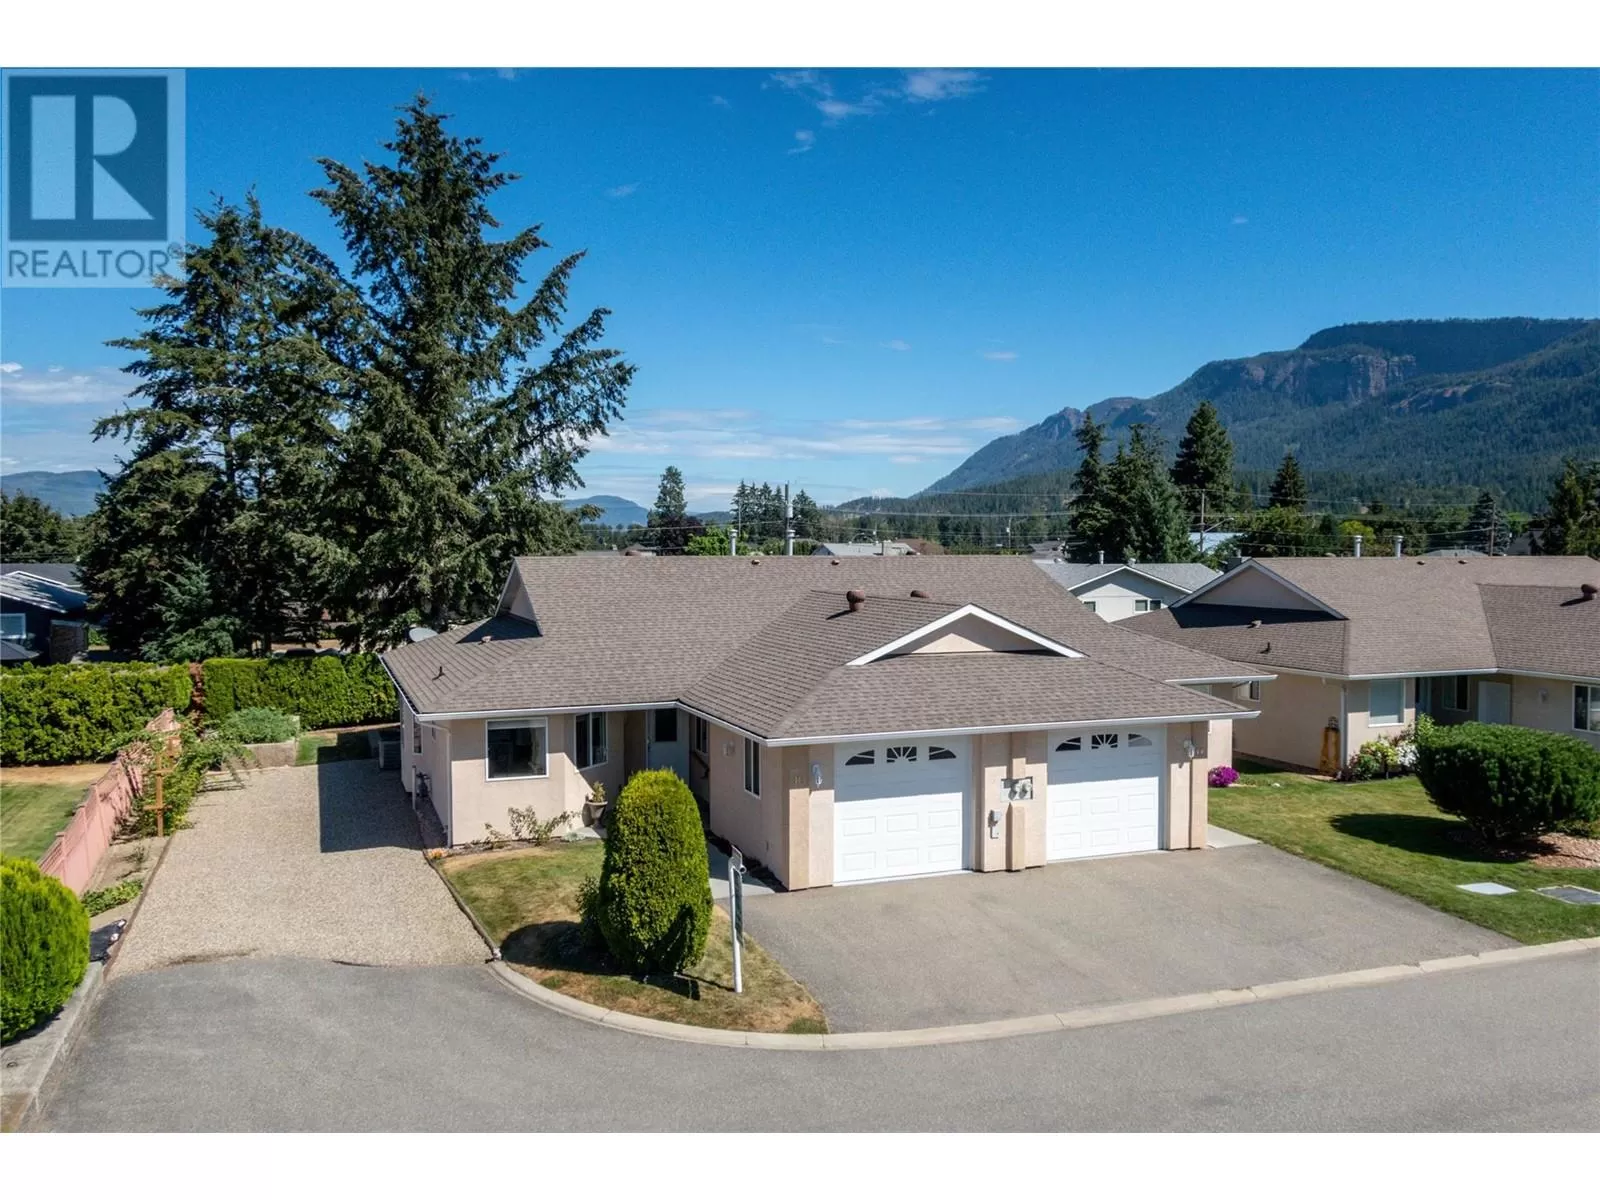 Duplex for rent: 201 Kildonan Avenue Unit# 10, Enderby, British Columbia V0E 1V2